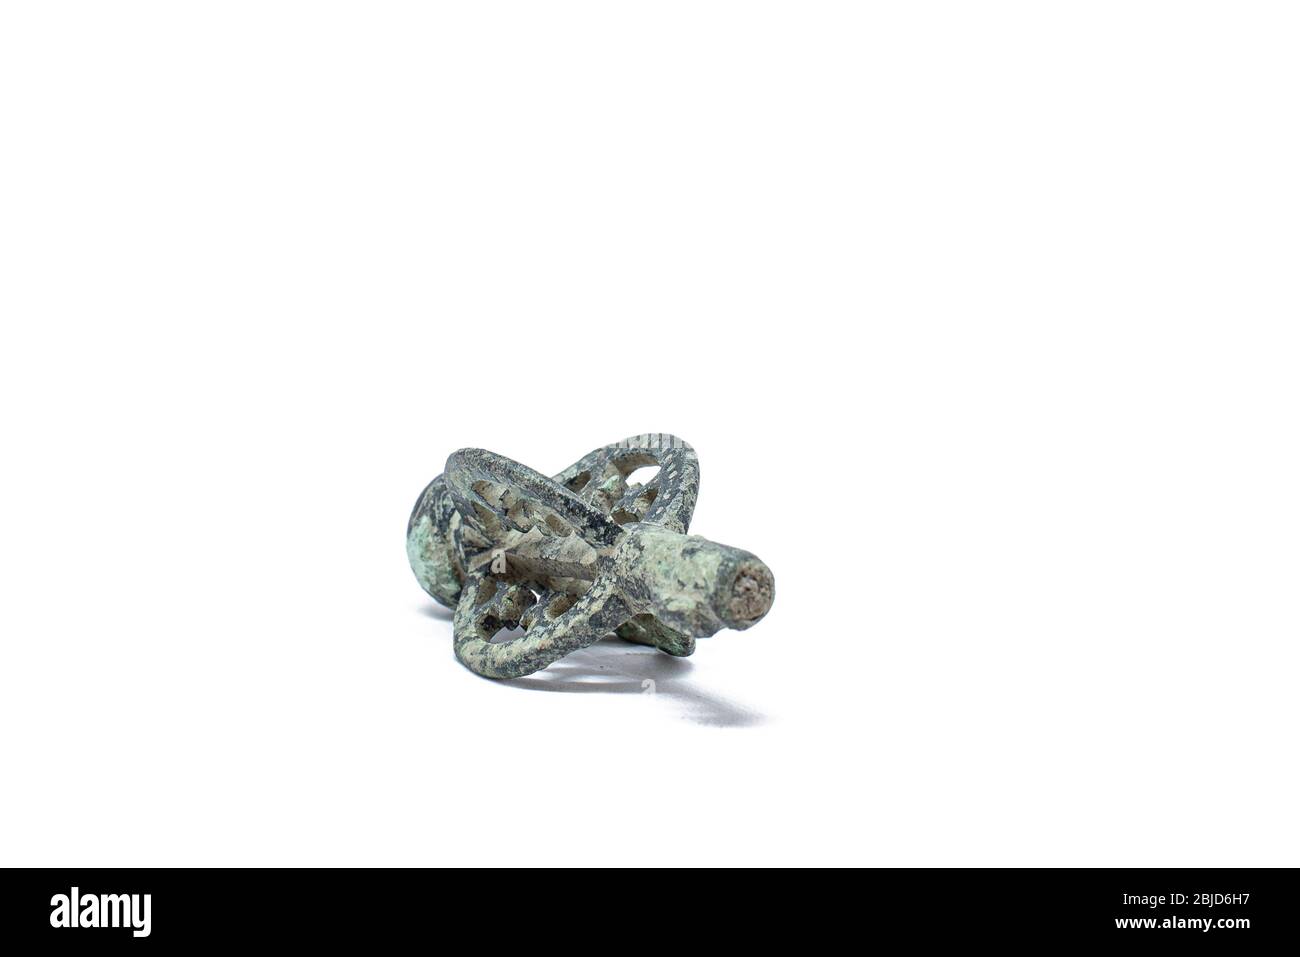 Ein echter Bronzezeitalter, 9. Jahrhundert, wikingerschlüssel in Norwegen gefunden Stockfoto